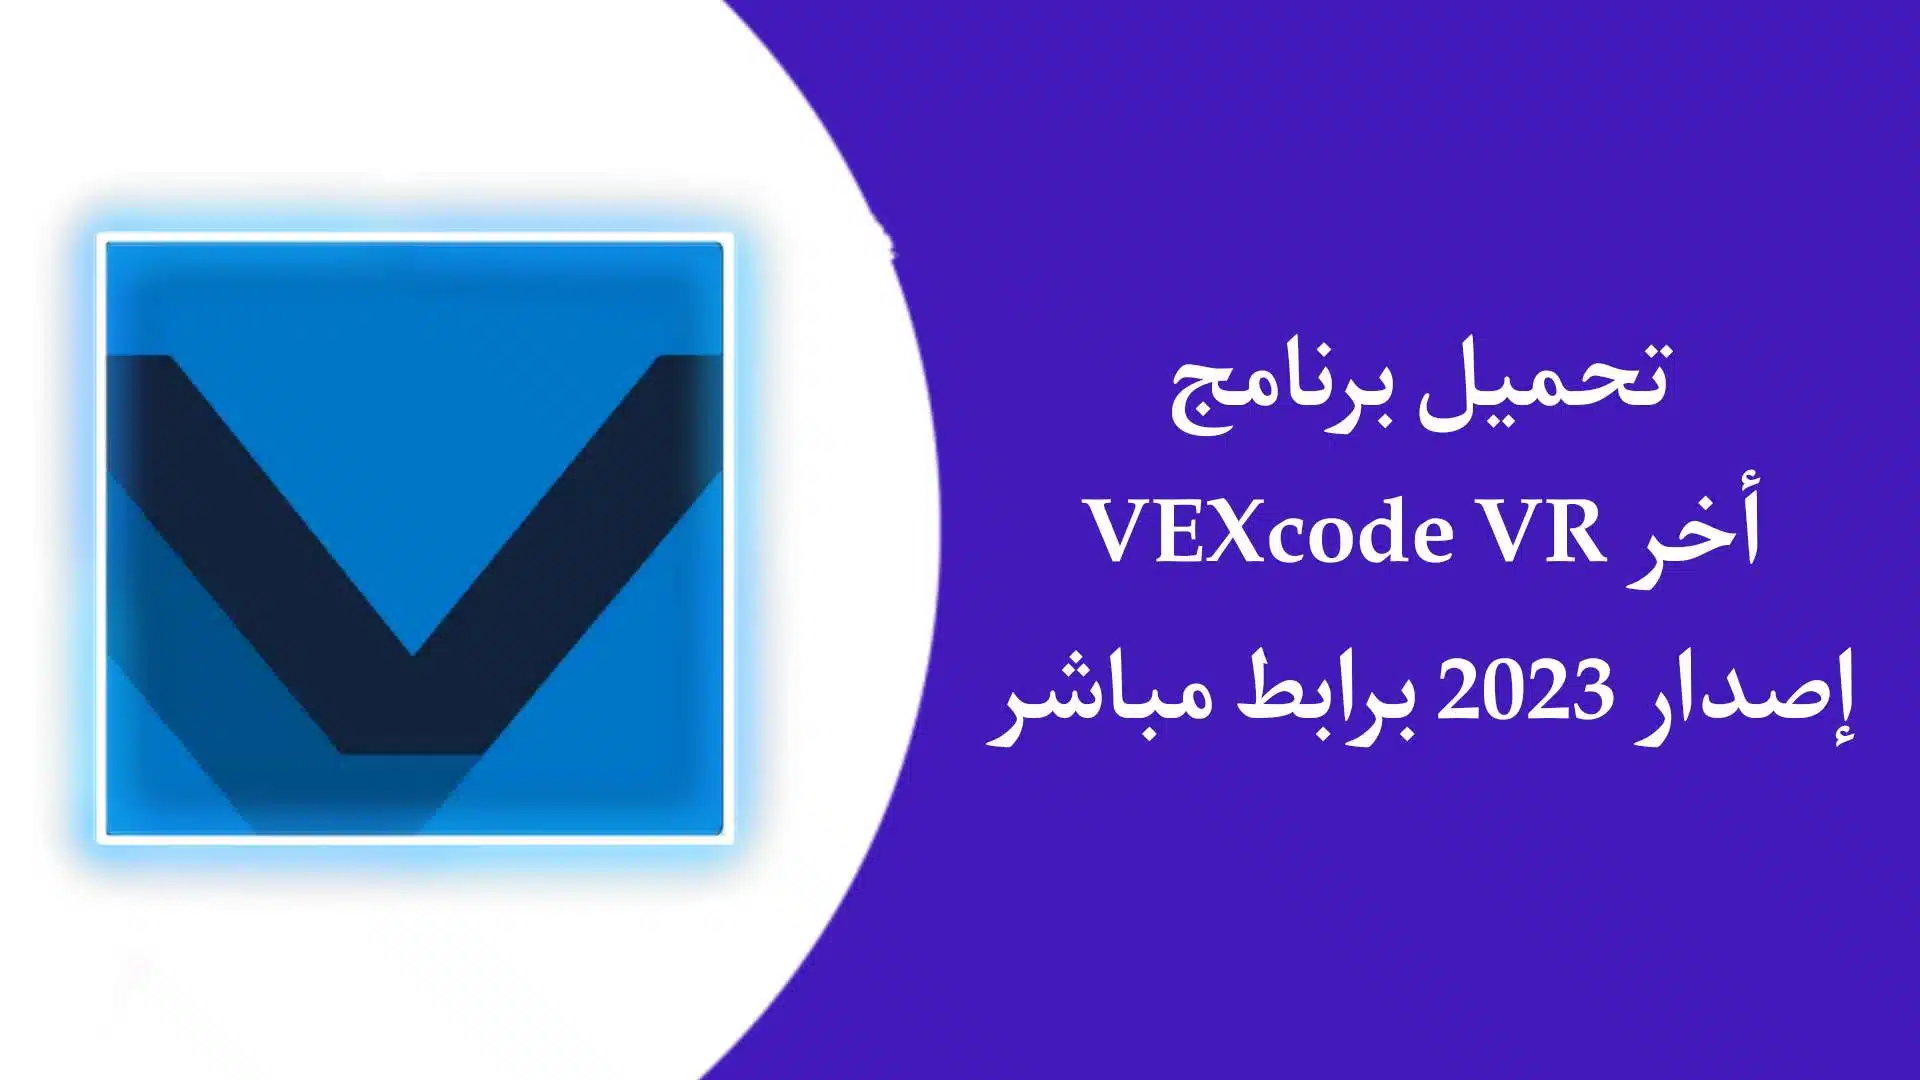 تحميل برنامج فيكس كود في ار VEXcode VR اخر اصدار 2023 للاندرويد APK